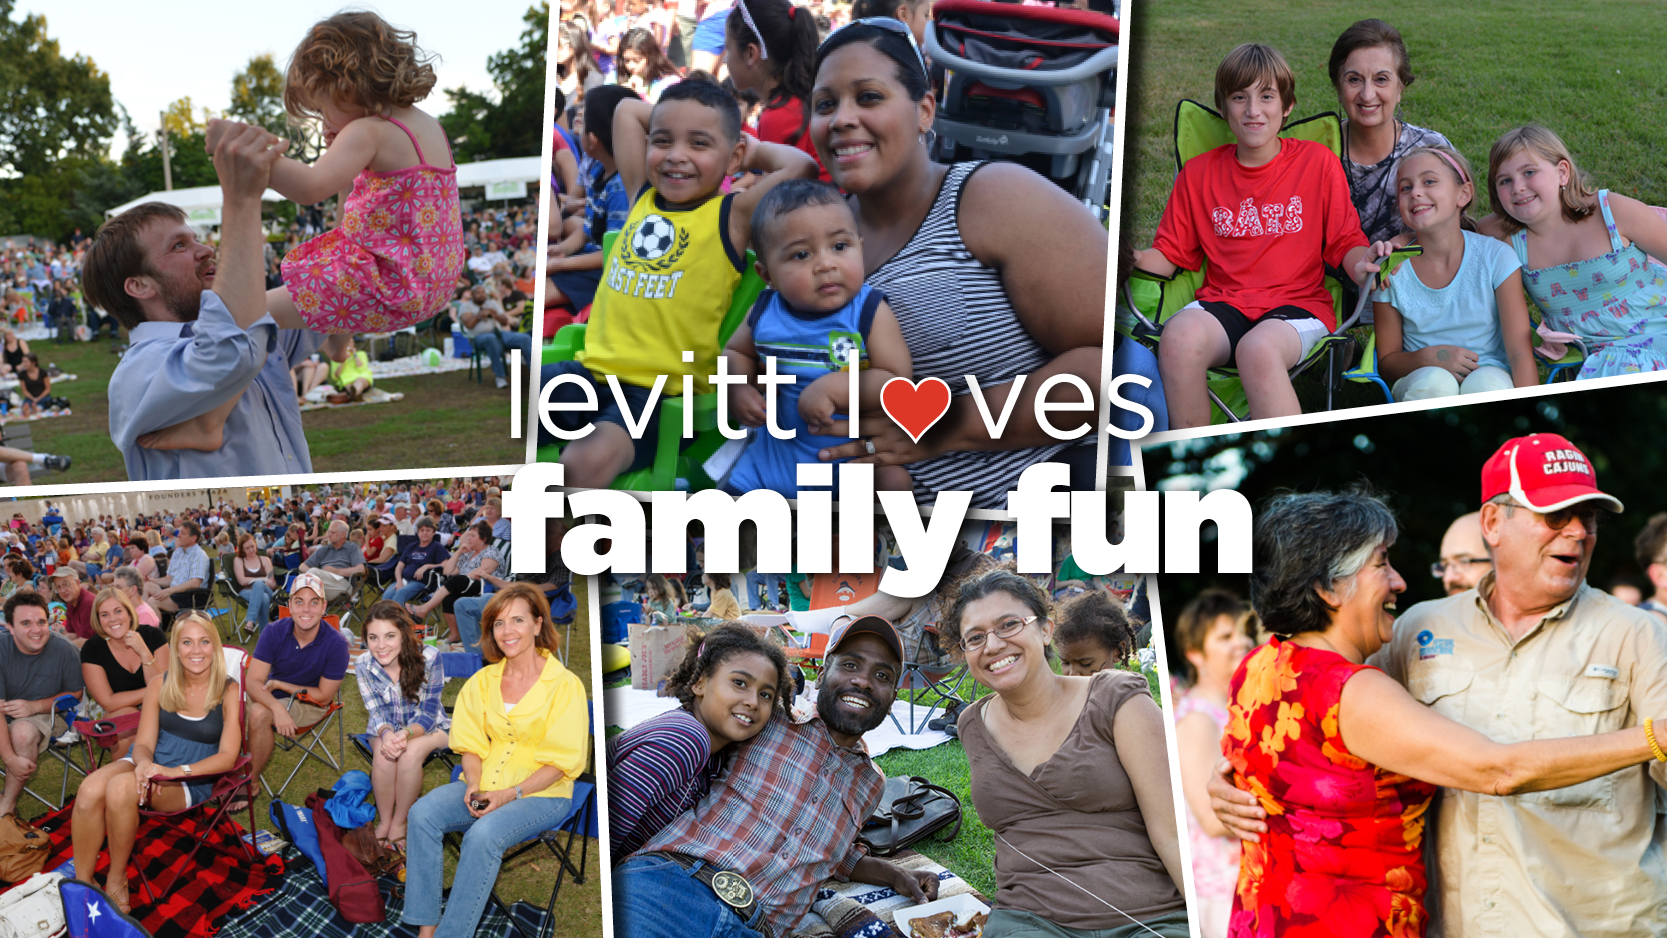 Levitt Loves Family Fun